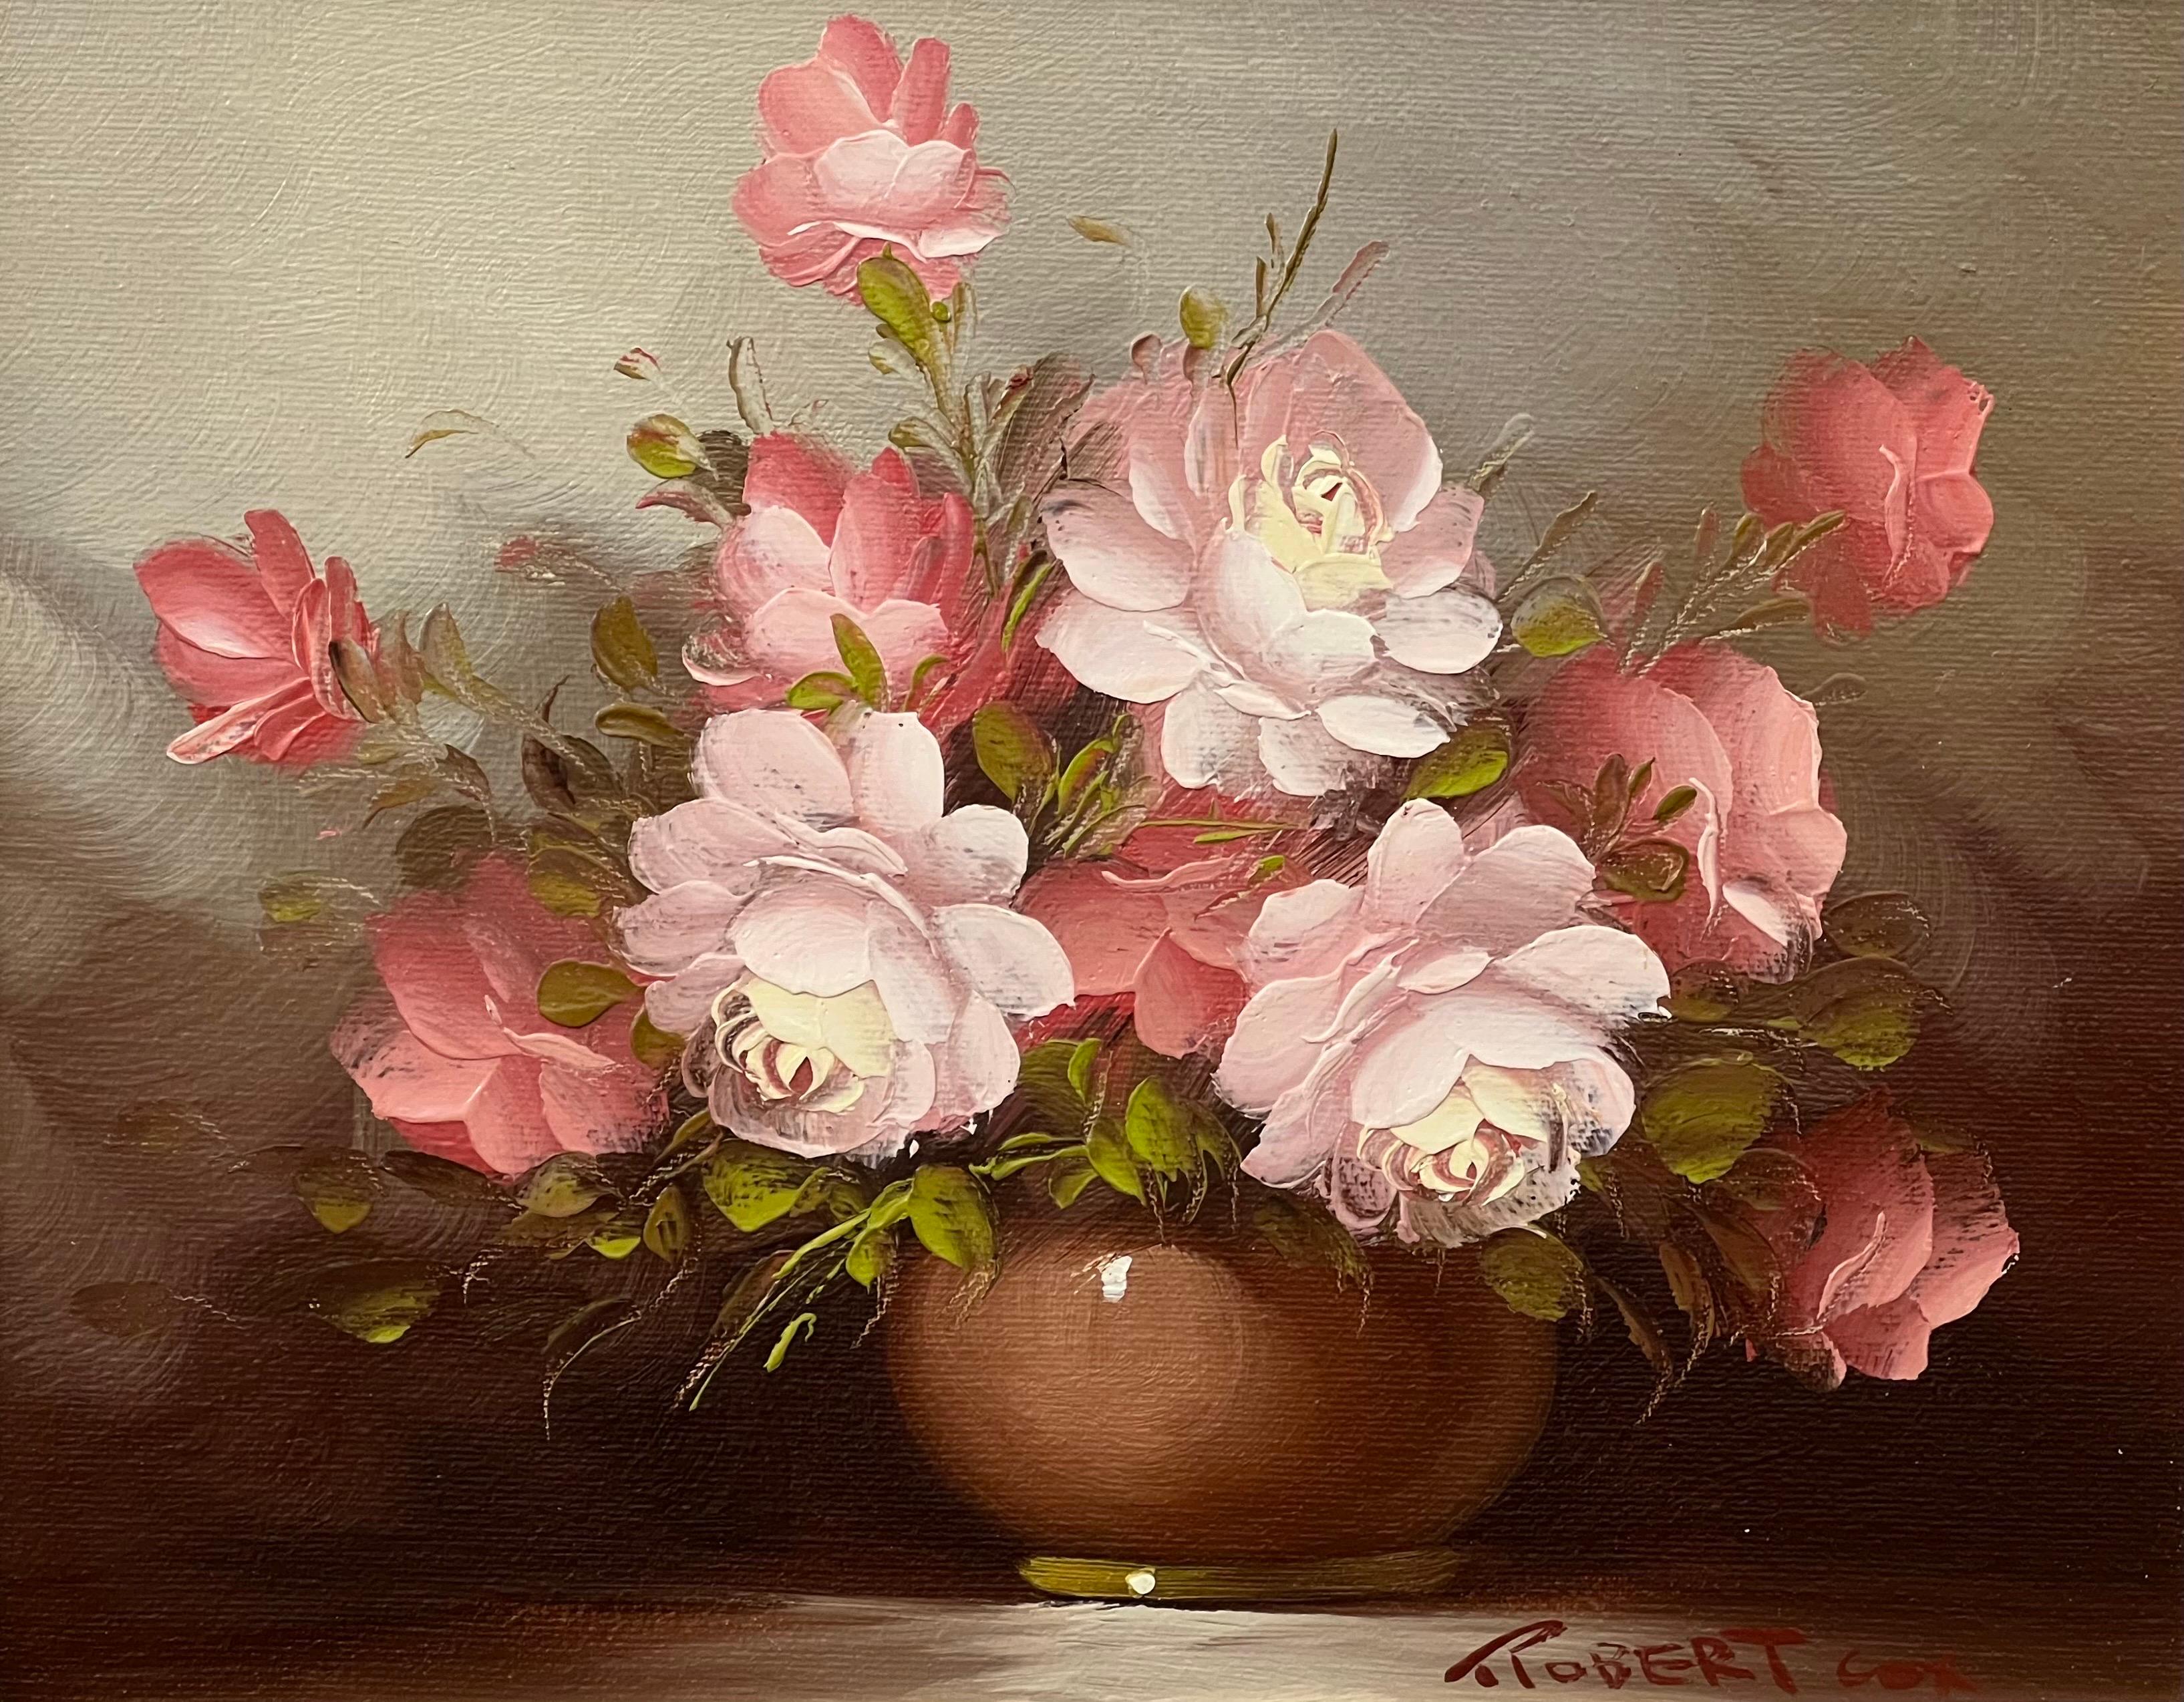 Nature morte d'un vase de roses roses, rouges et blanches par l'artiste américain du 20e siècle Robert COX (1934-2001)

L'œuvre d'art mesure 7,5 x 9,5 pouces (sans cadre).
Encadrement sur demande

Robert COX, artiste américain primé, a étudié à